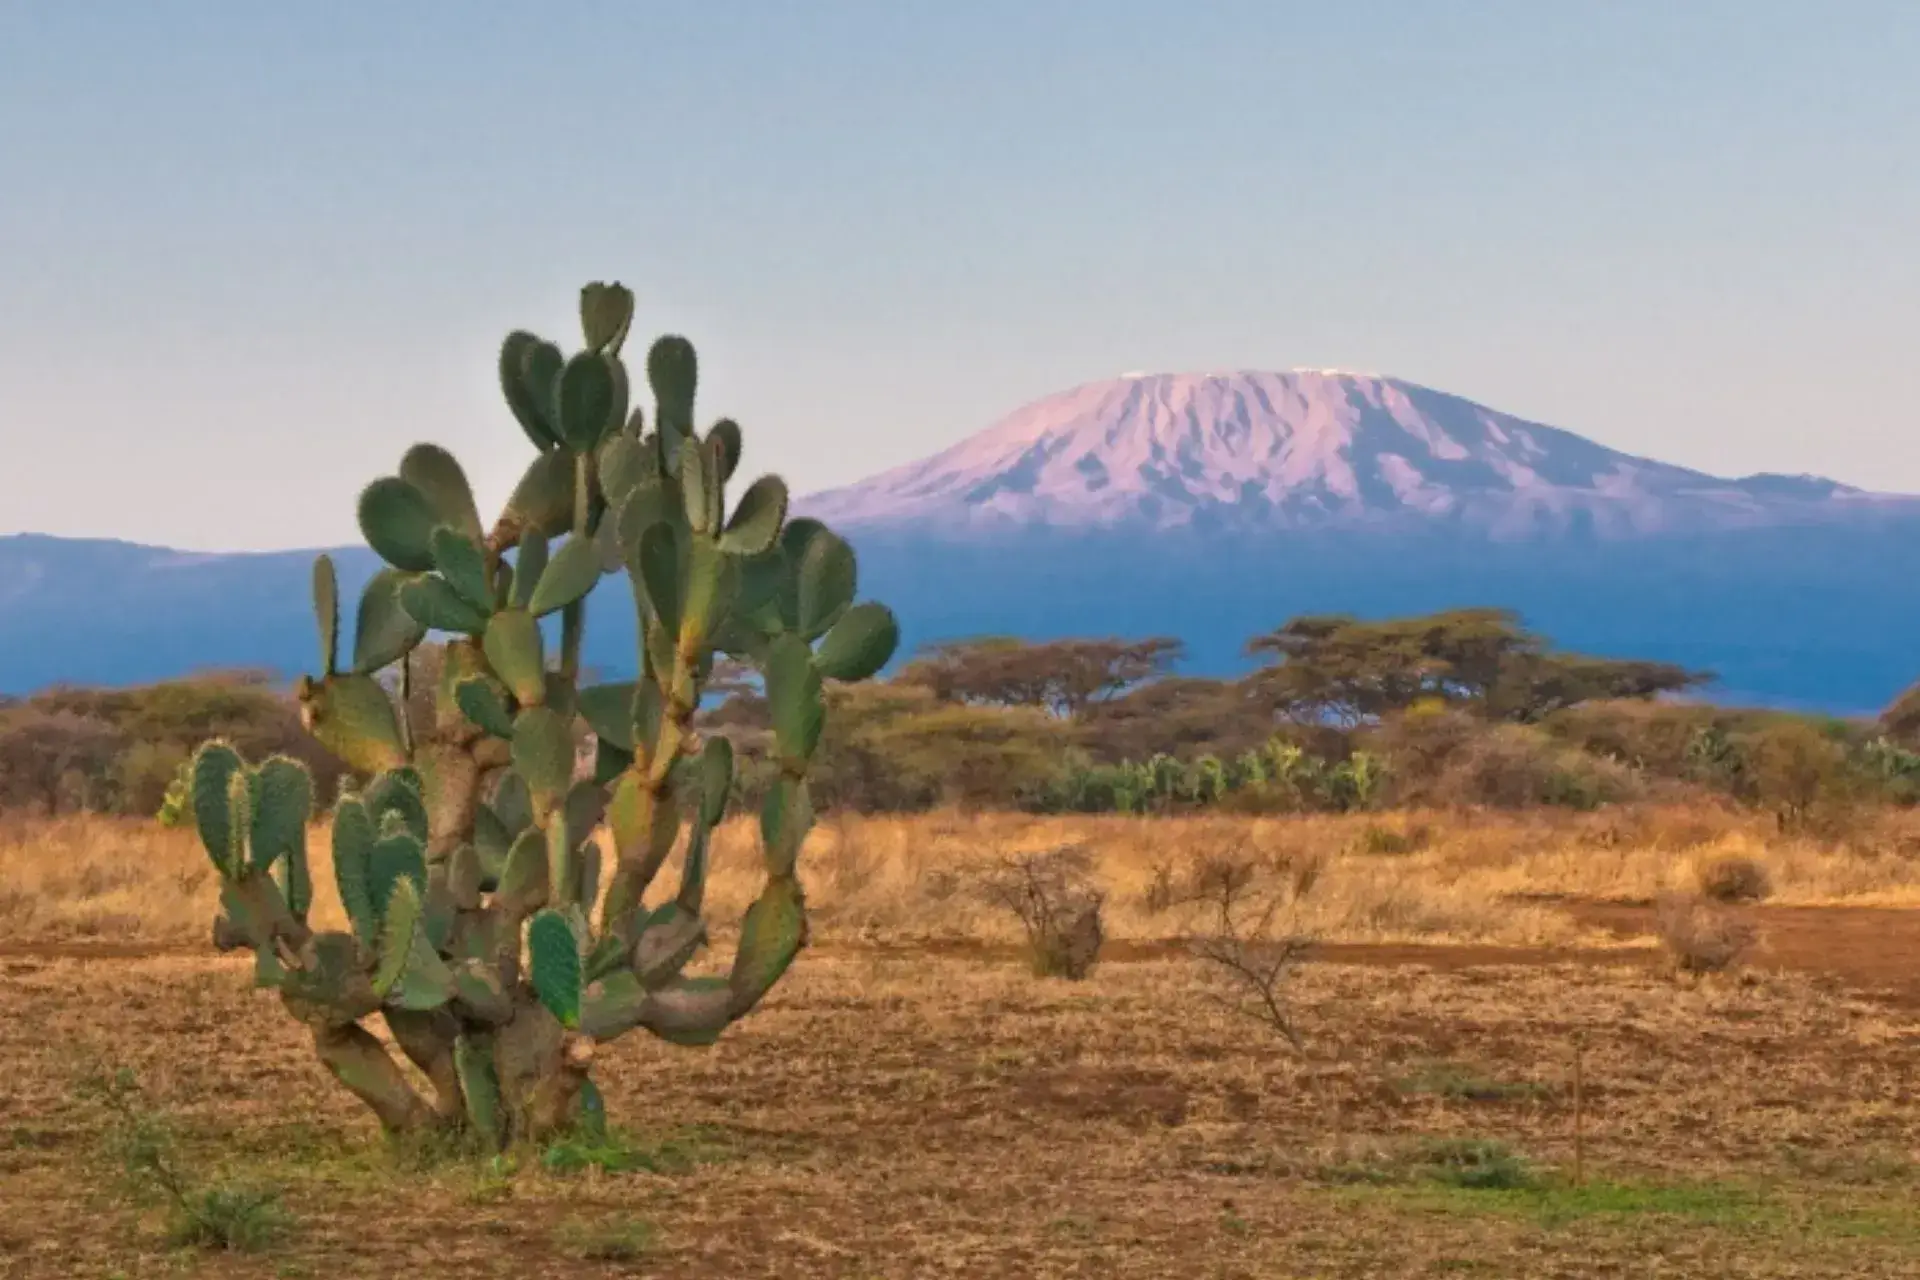 Vistas de la sabana, un cactus y el Kilimamjaro de fondo